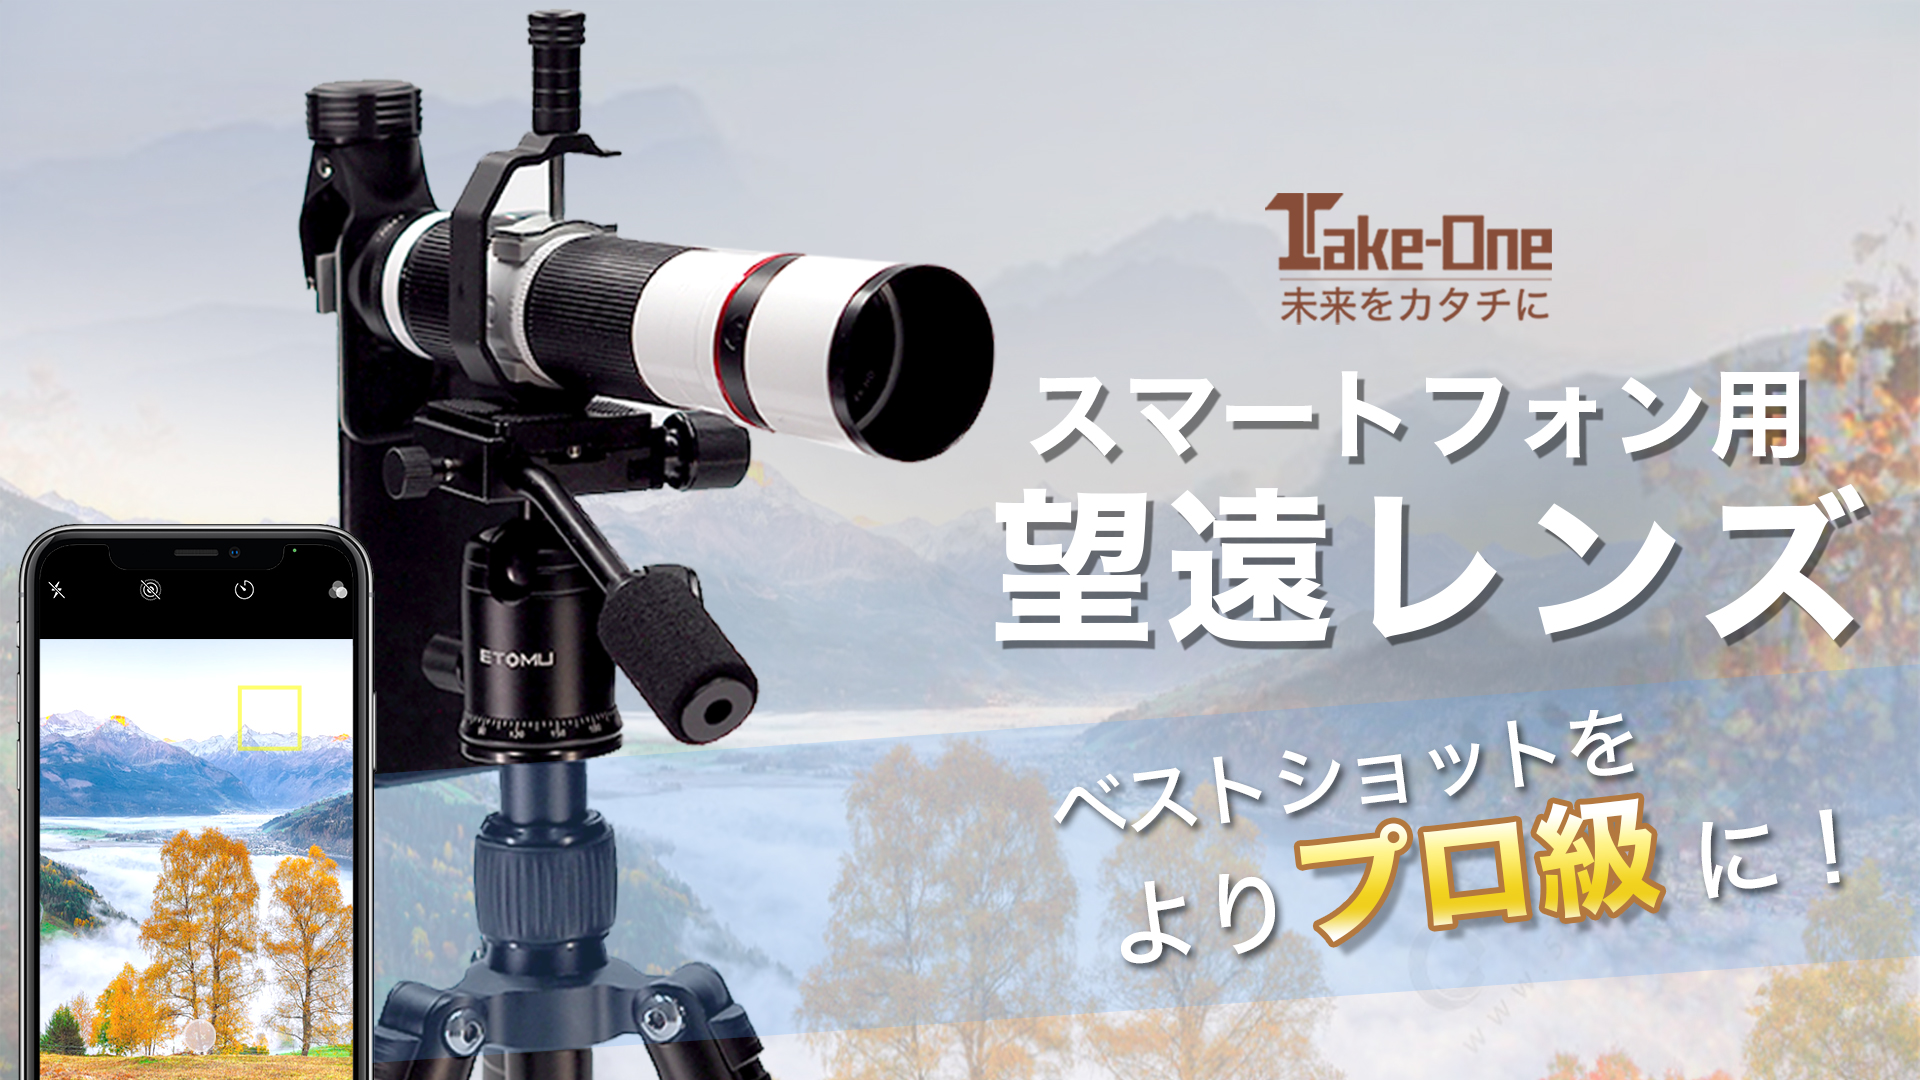 遠くの景色もくっきり撮れる 便利な三脚付き スマートフォン用望遠レンズ Engadget 日本版